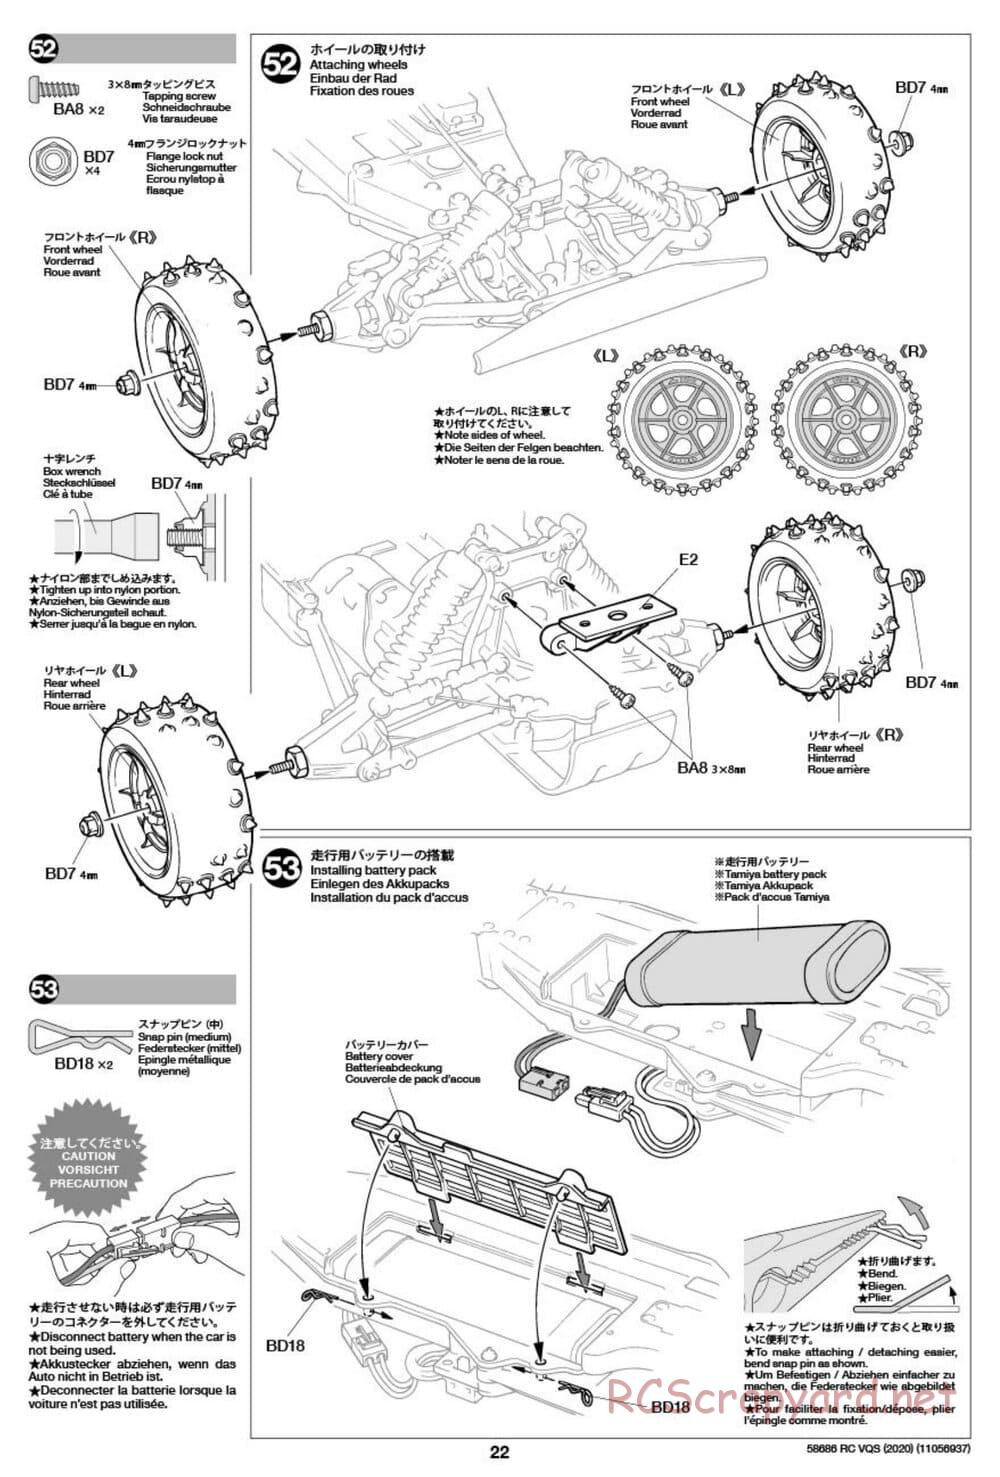 Tamiya - VQS (2020) - AV Chassis - Manual - Page 22